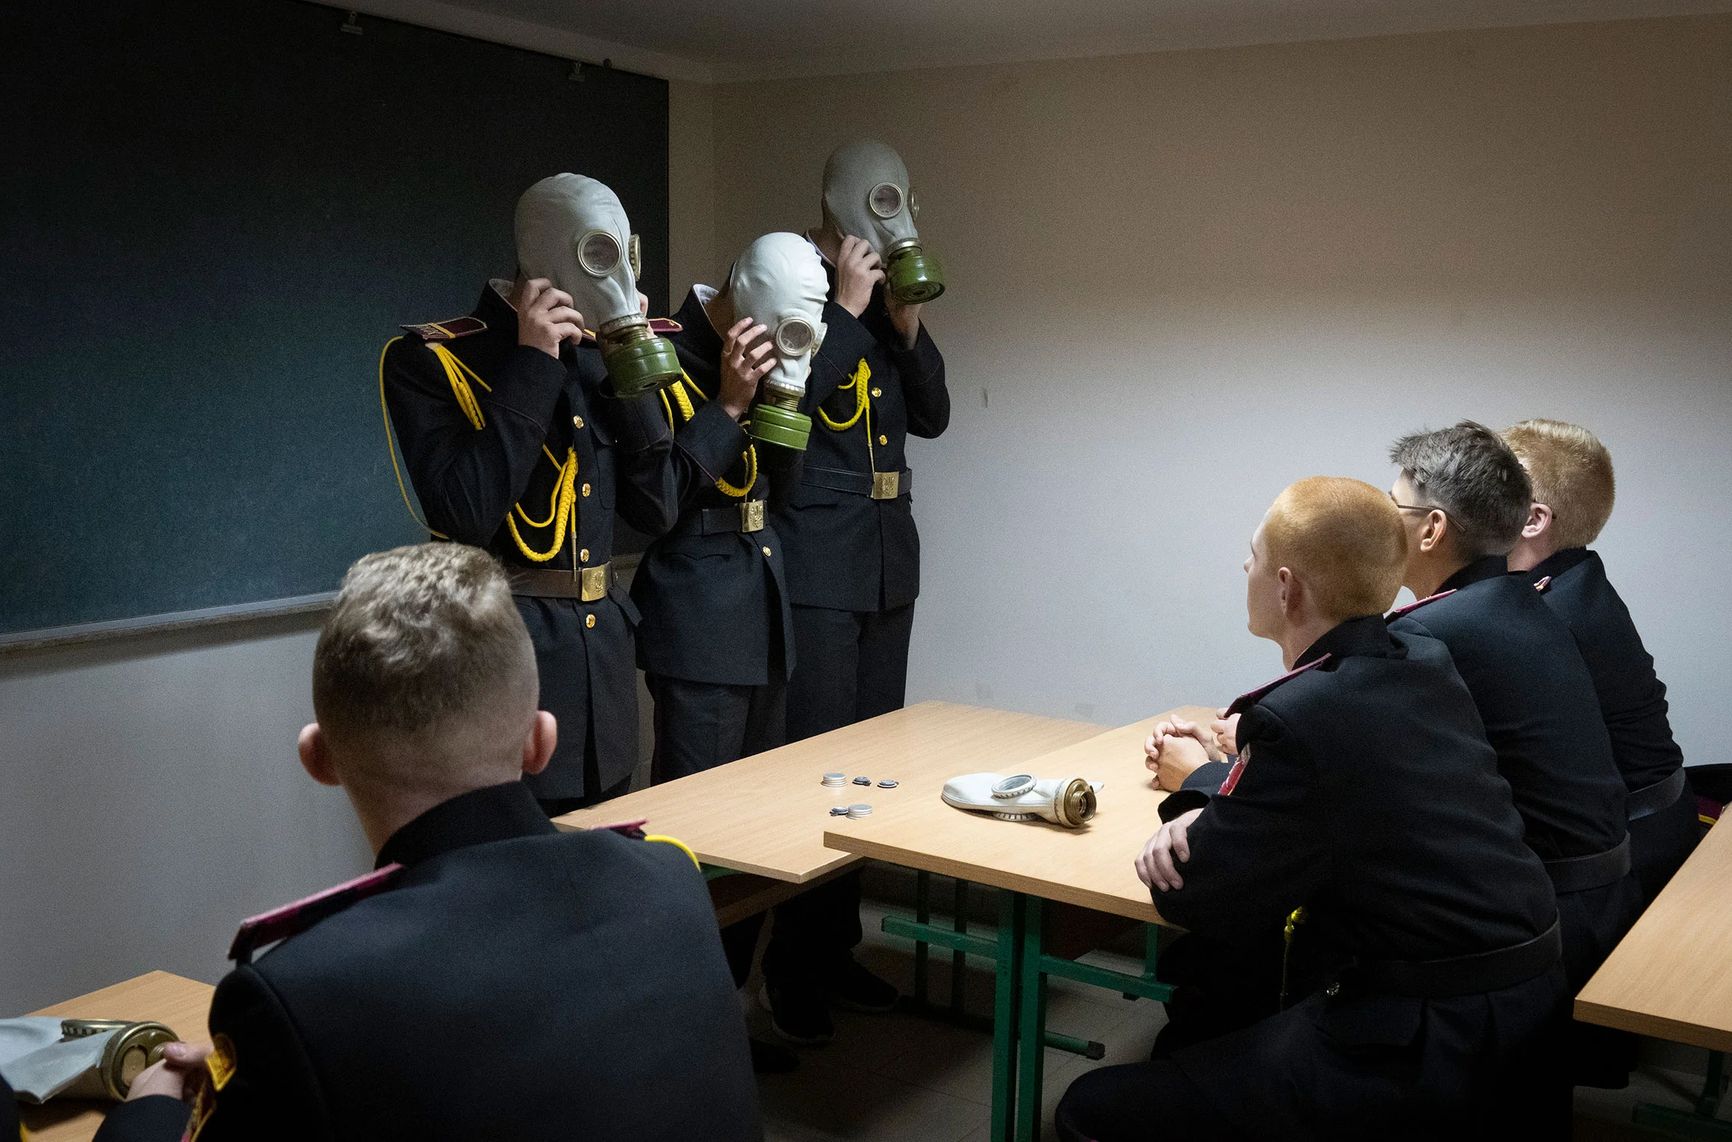 Курсанты отрабатывают аварийную ситуацию во время урока в бомбоубежище в первый учебный день в кадетском лицее в Киеве, Украина, 1 сентября